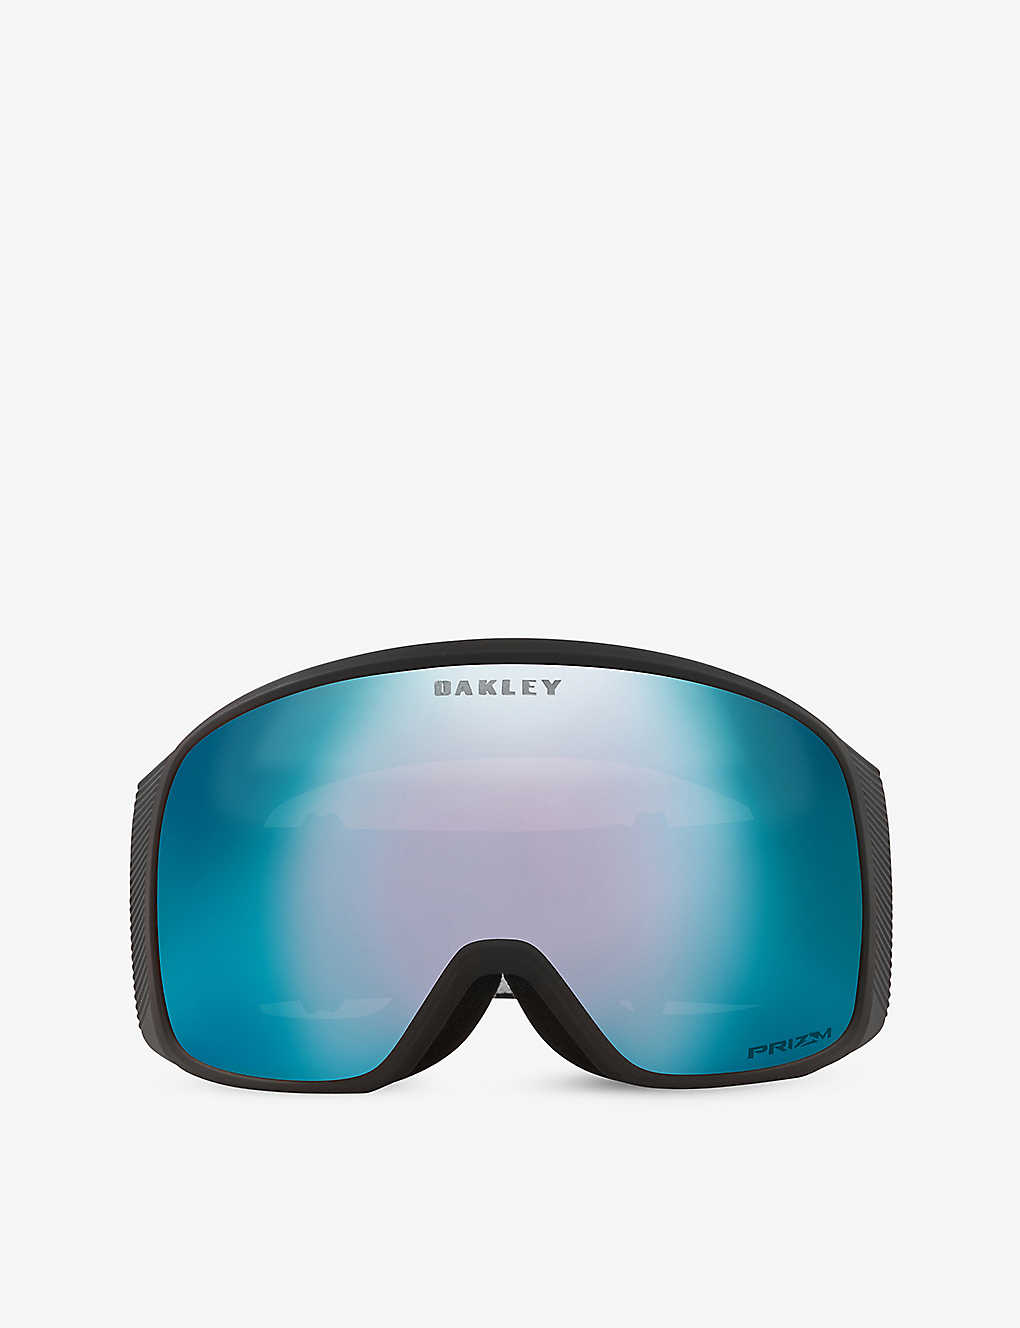 OO7104 Flight Tracker L Prizm™ Snow goggles Selfridges & Co Women Sport & Swimwear Skiwear Ski Accessories 